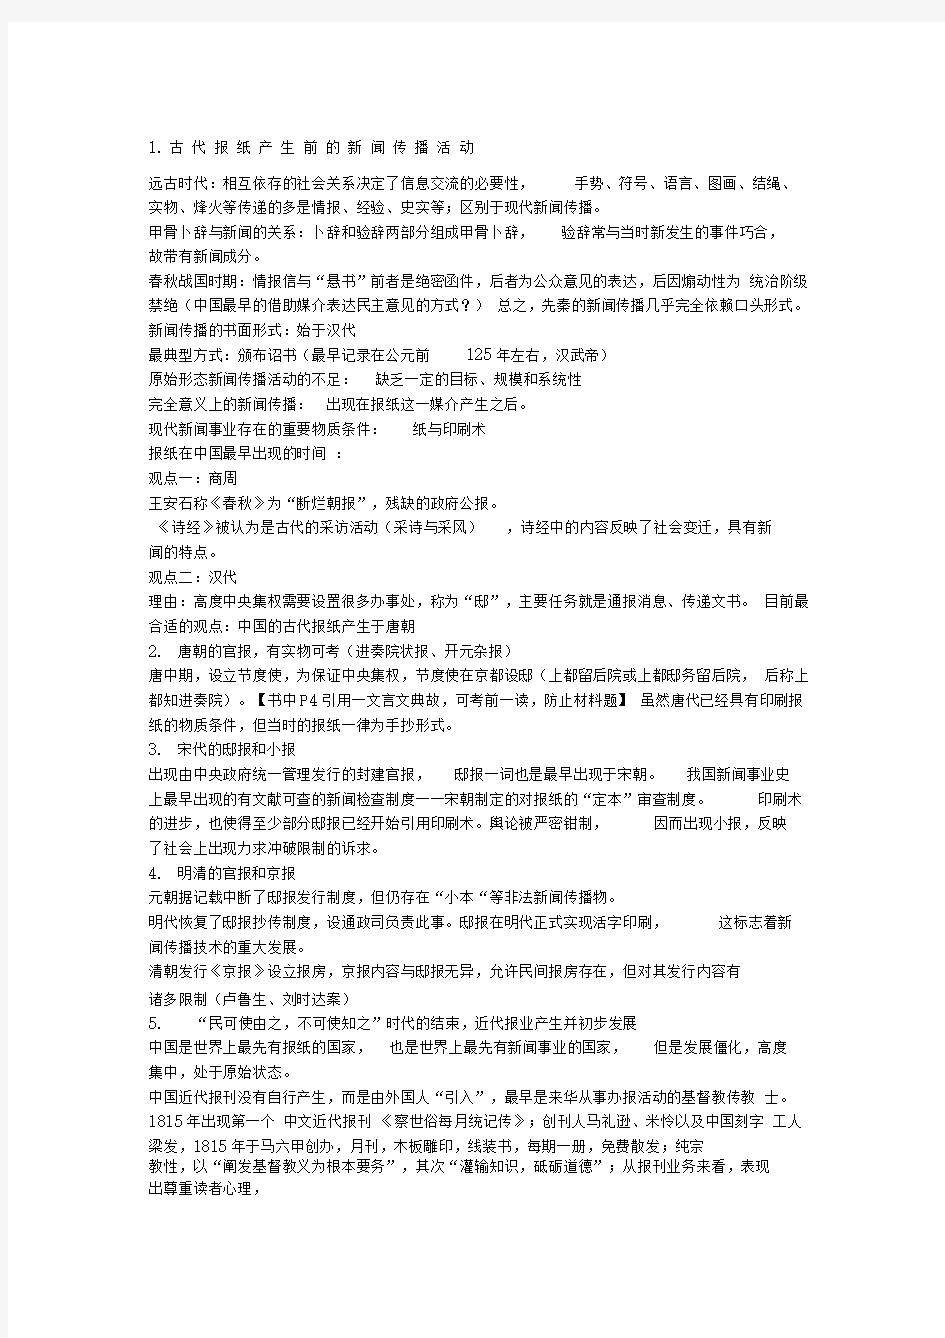 中国新闻事业史教程笔记